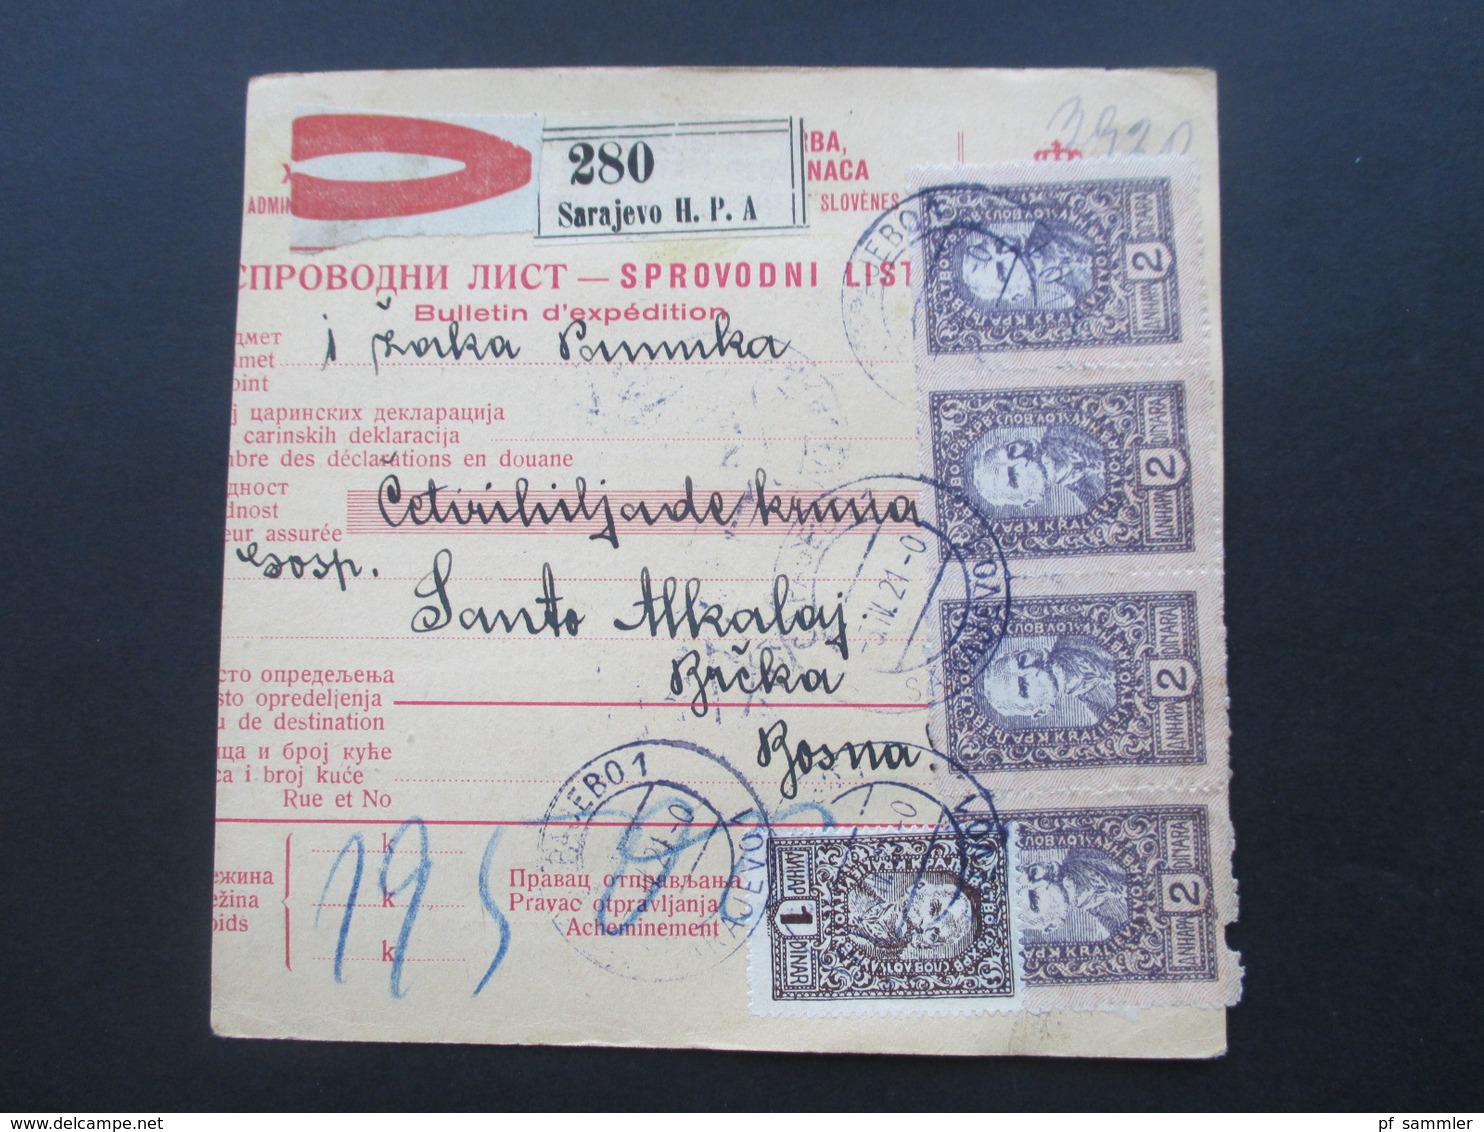 Jugoslawien SHS 1921 Paketkarten 24 Stück mit interessanten Frankaturen und Klebezettel und Stempel!